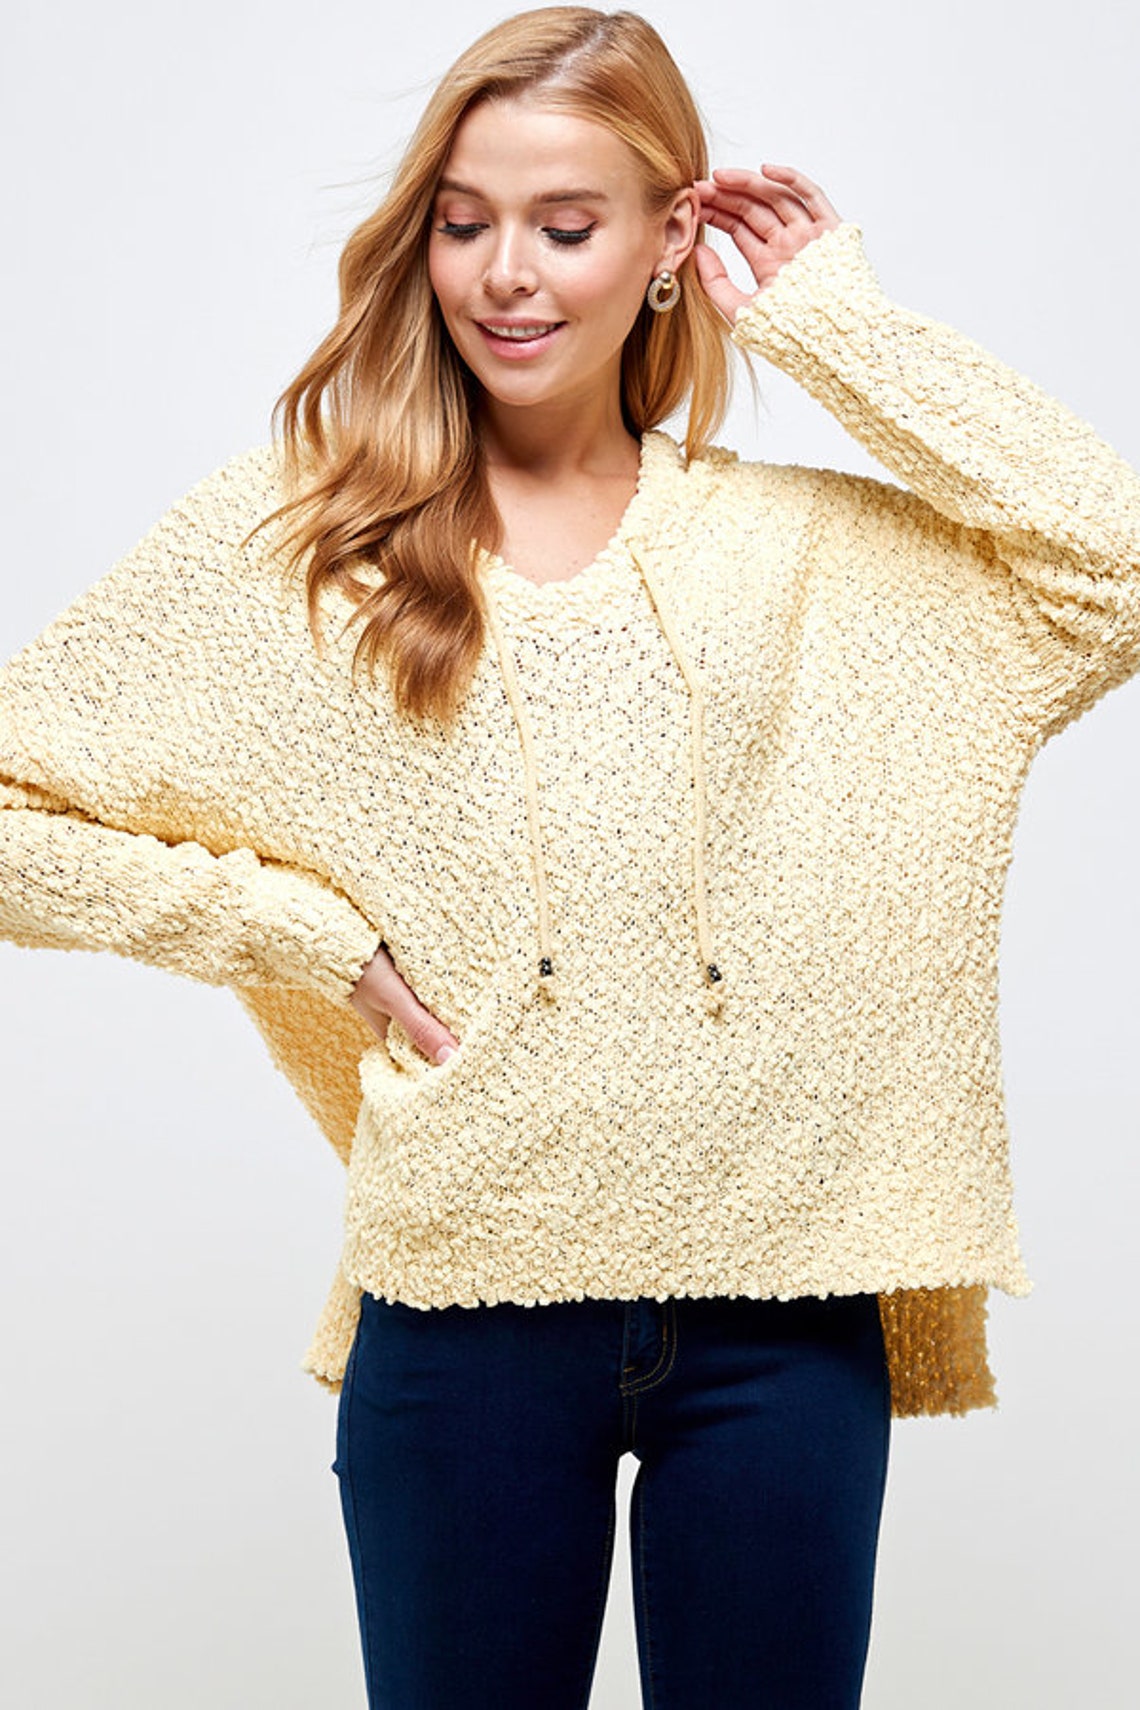 Women Cool Hoodies / Women's Casual Hoodie Sweater / - Etsy